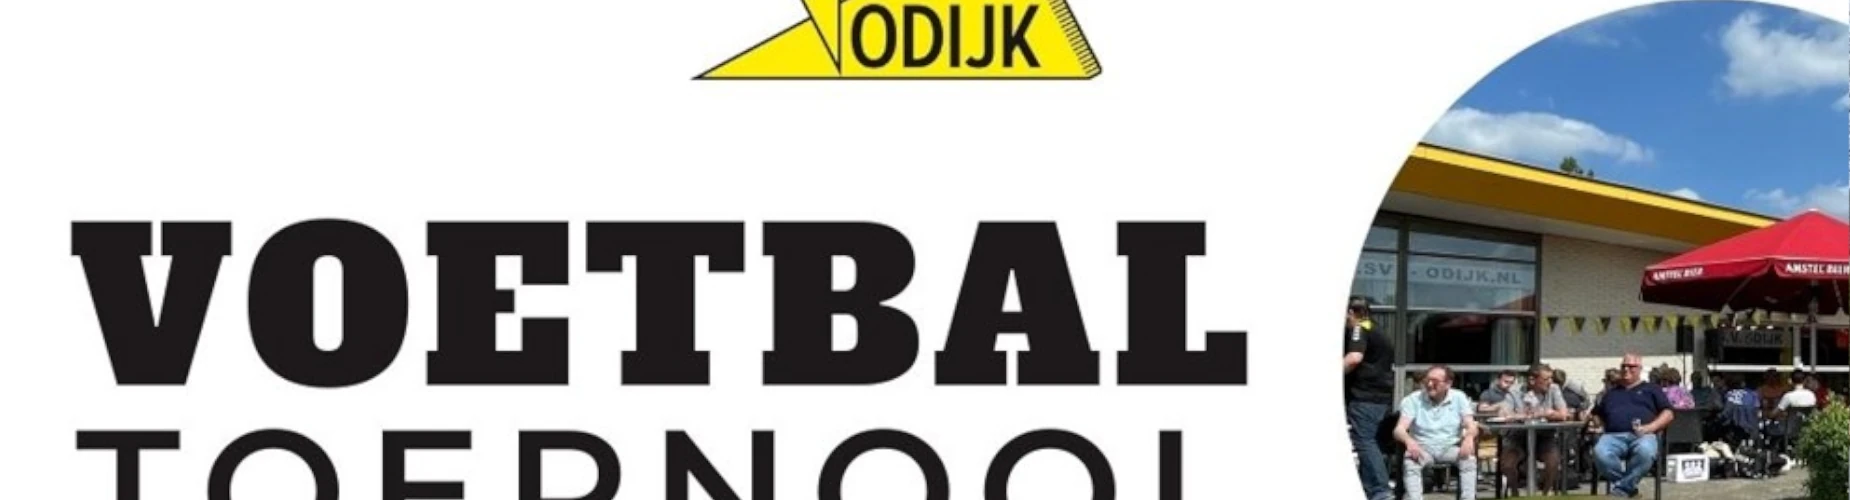 Banner - Voetbal Toernooi Odijk - SV Odijk - Odijk